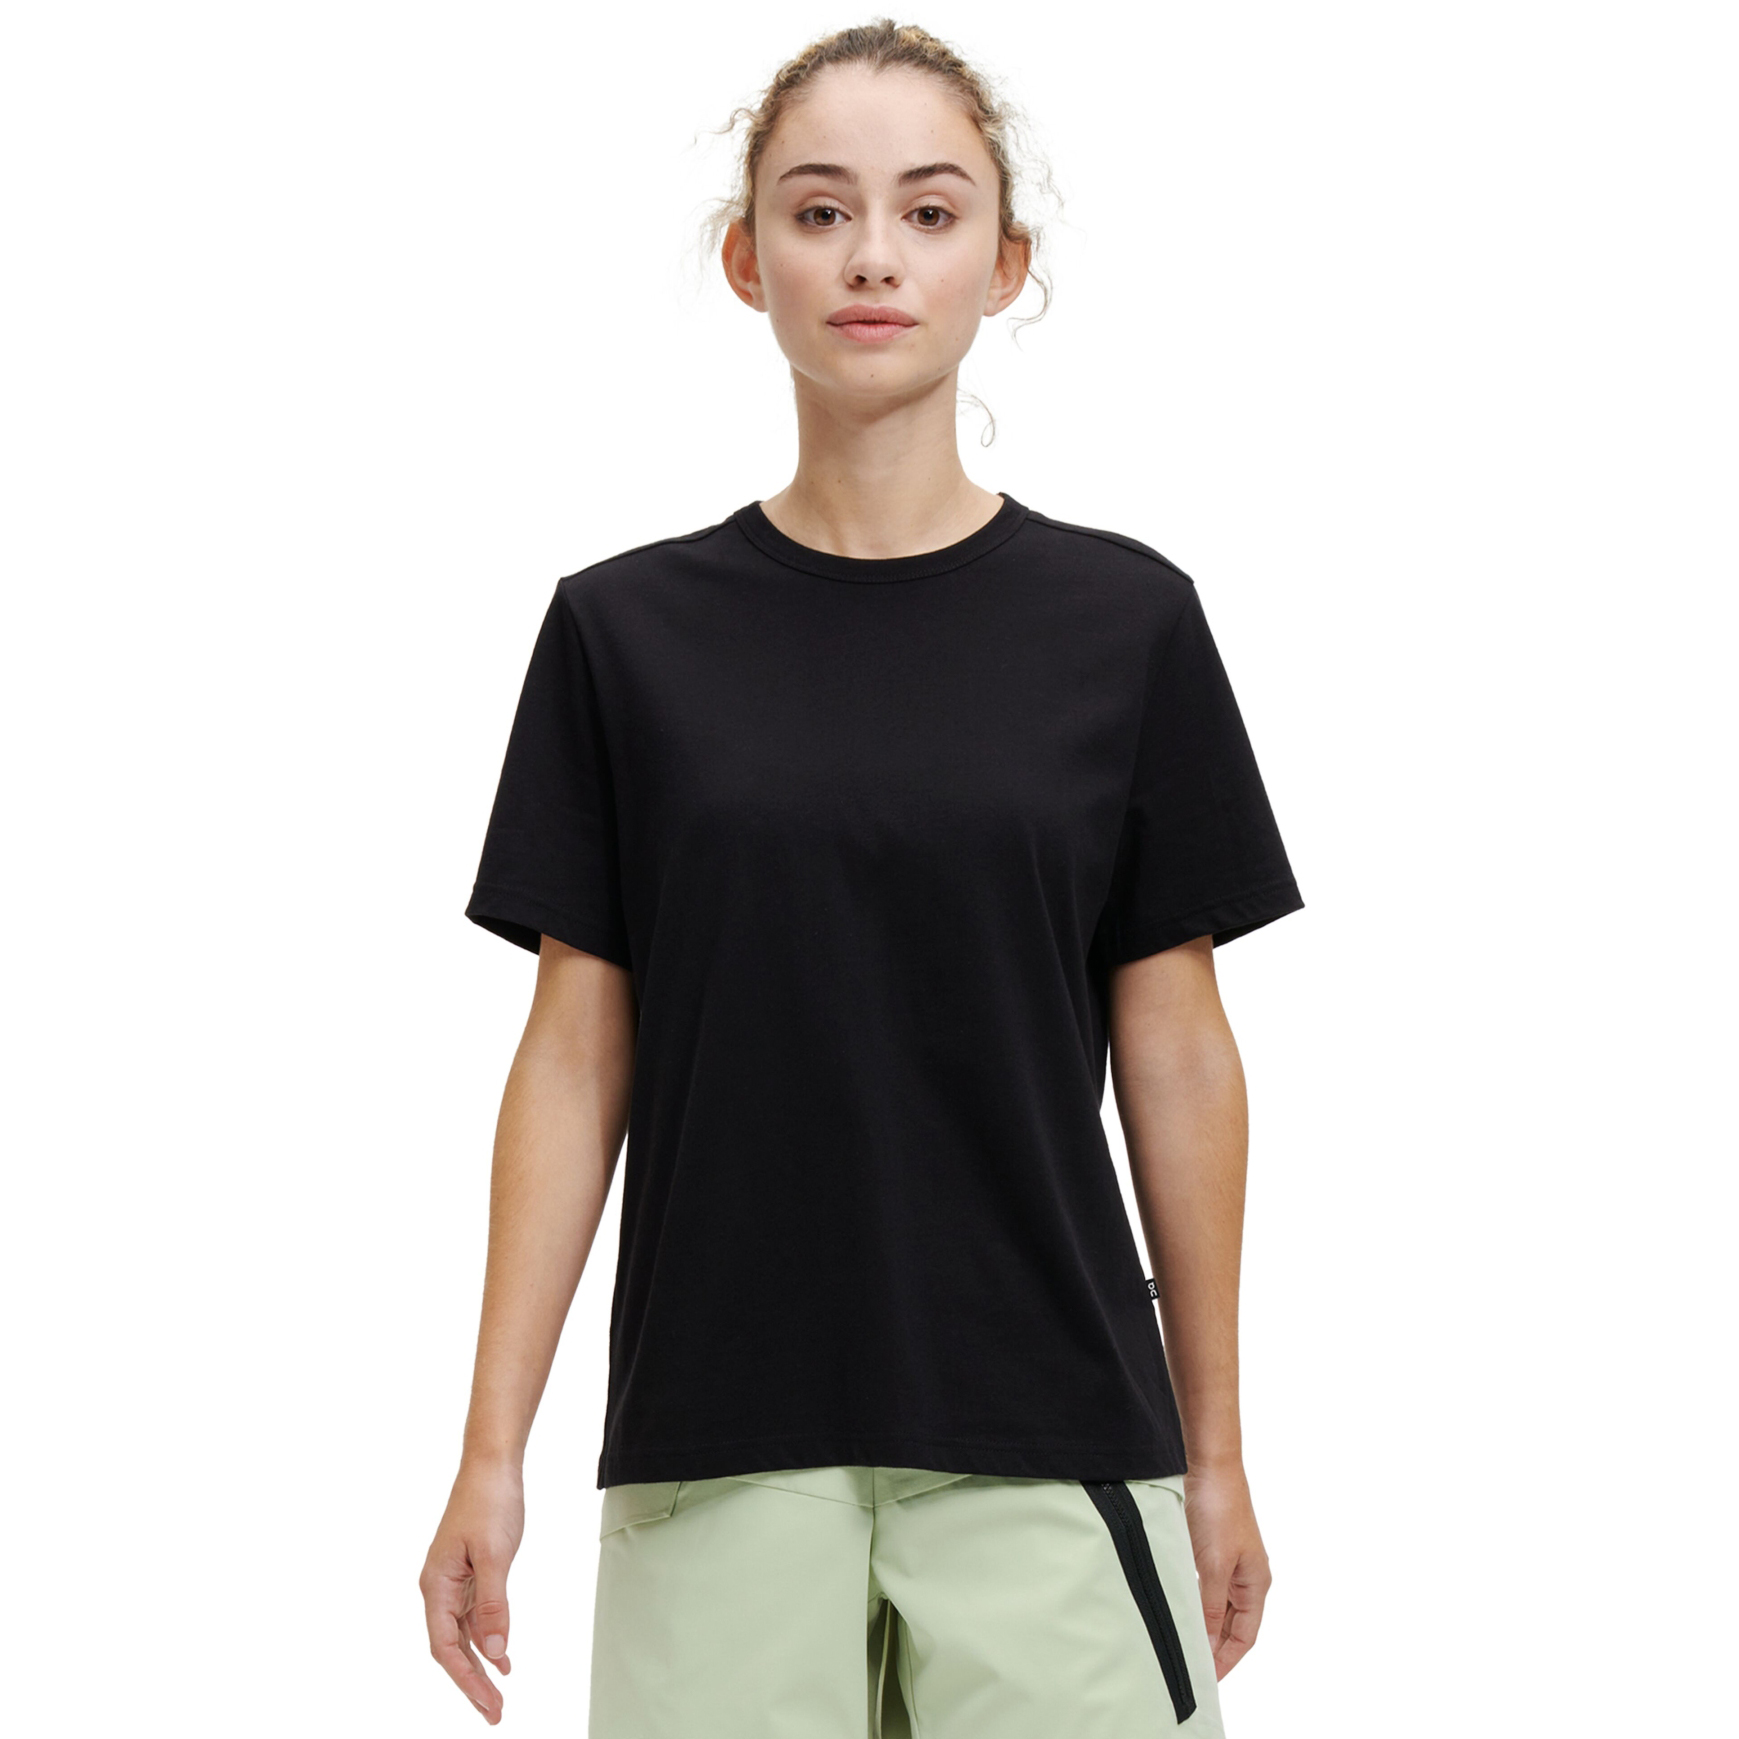 Produktbild von On T Damen T-Shirt - Schwarz